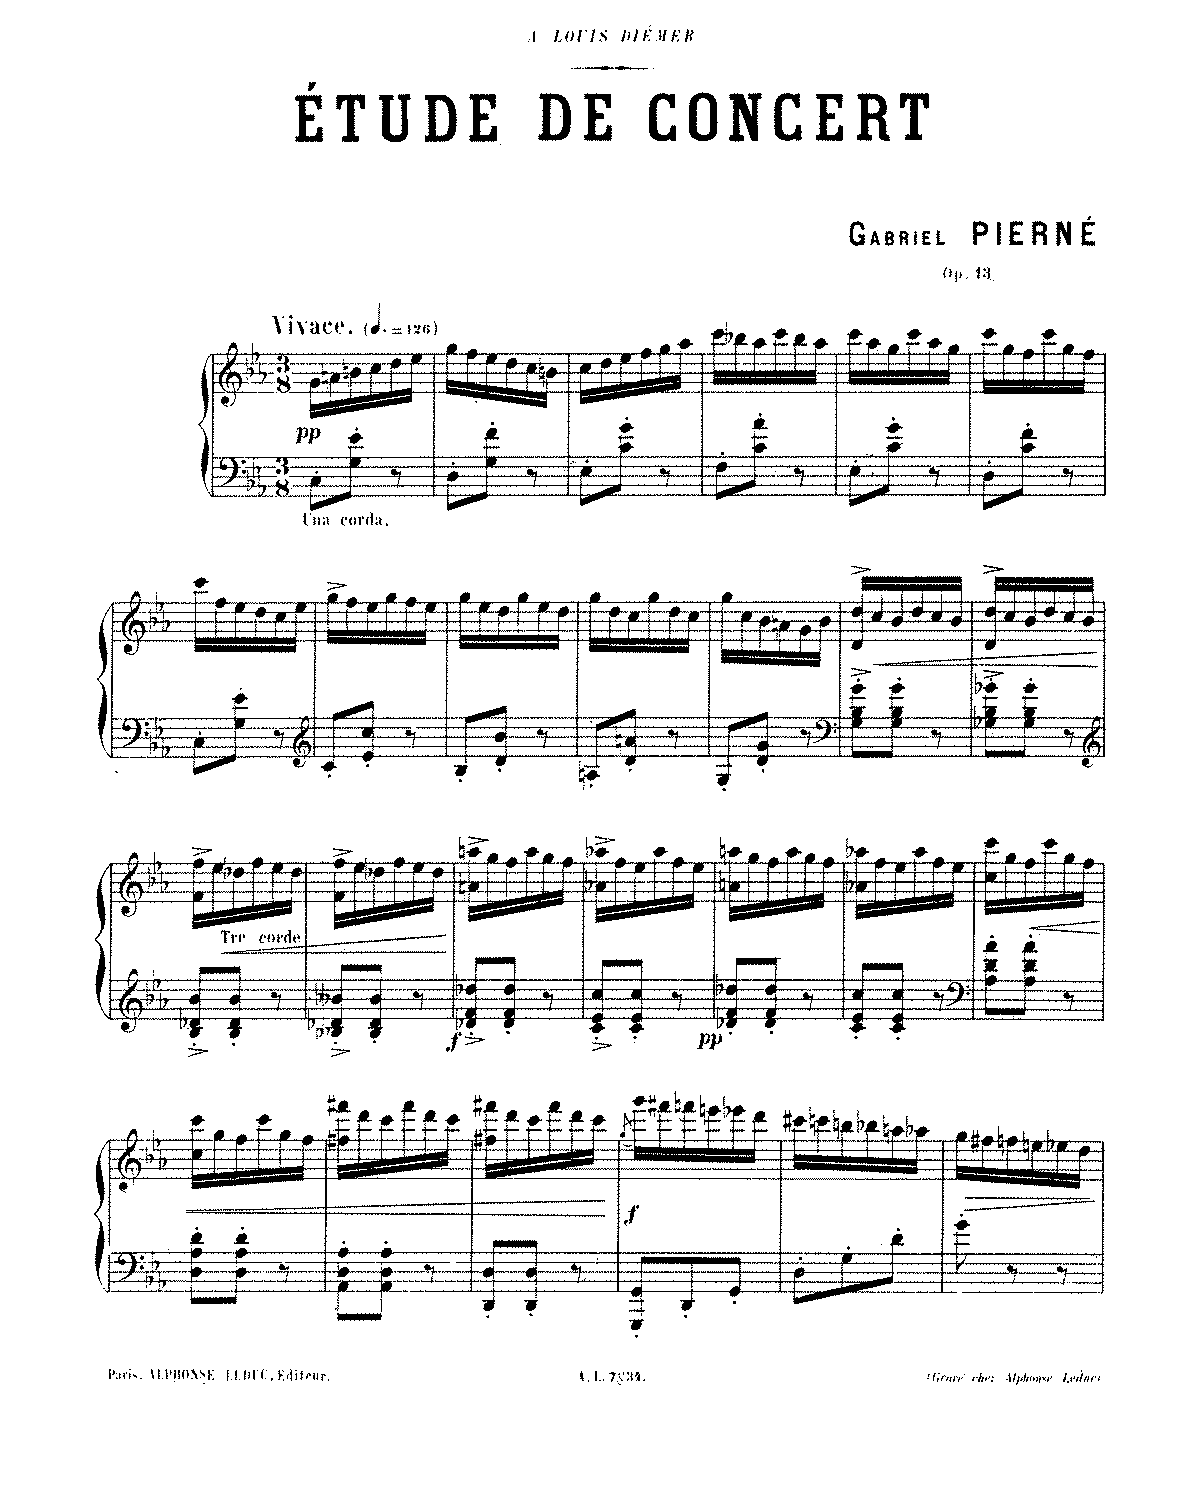 Etude de Concert, Op.13 (Pierné, Gabriel) - IMSLP